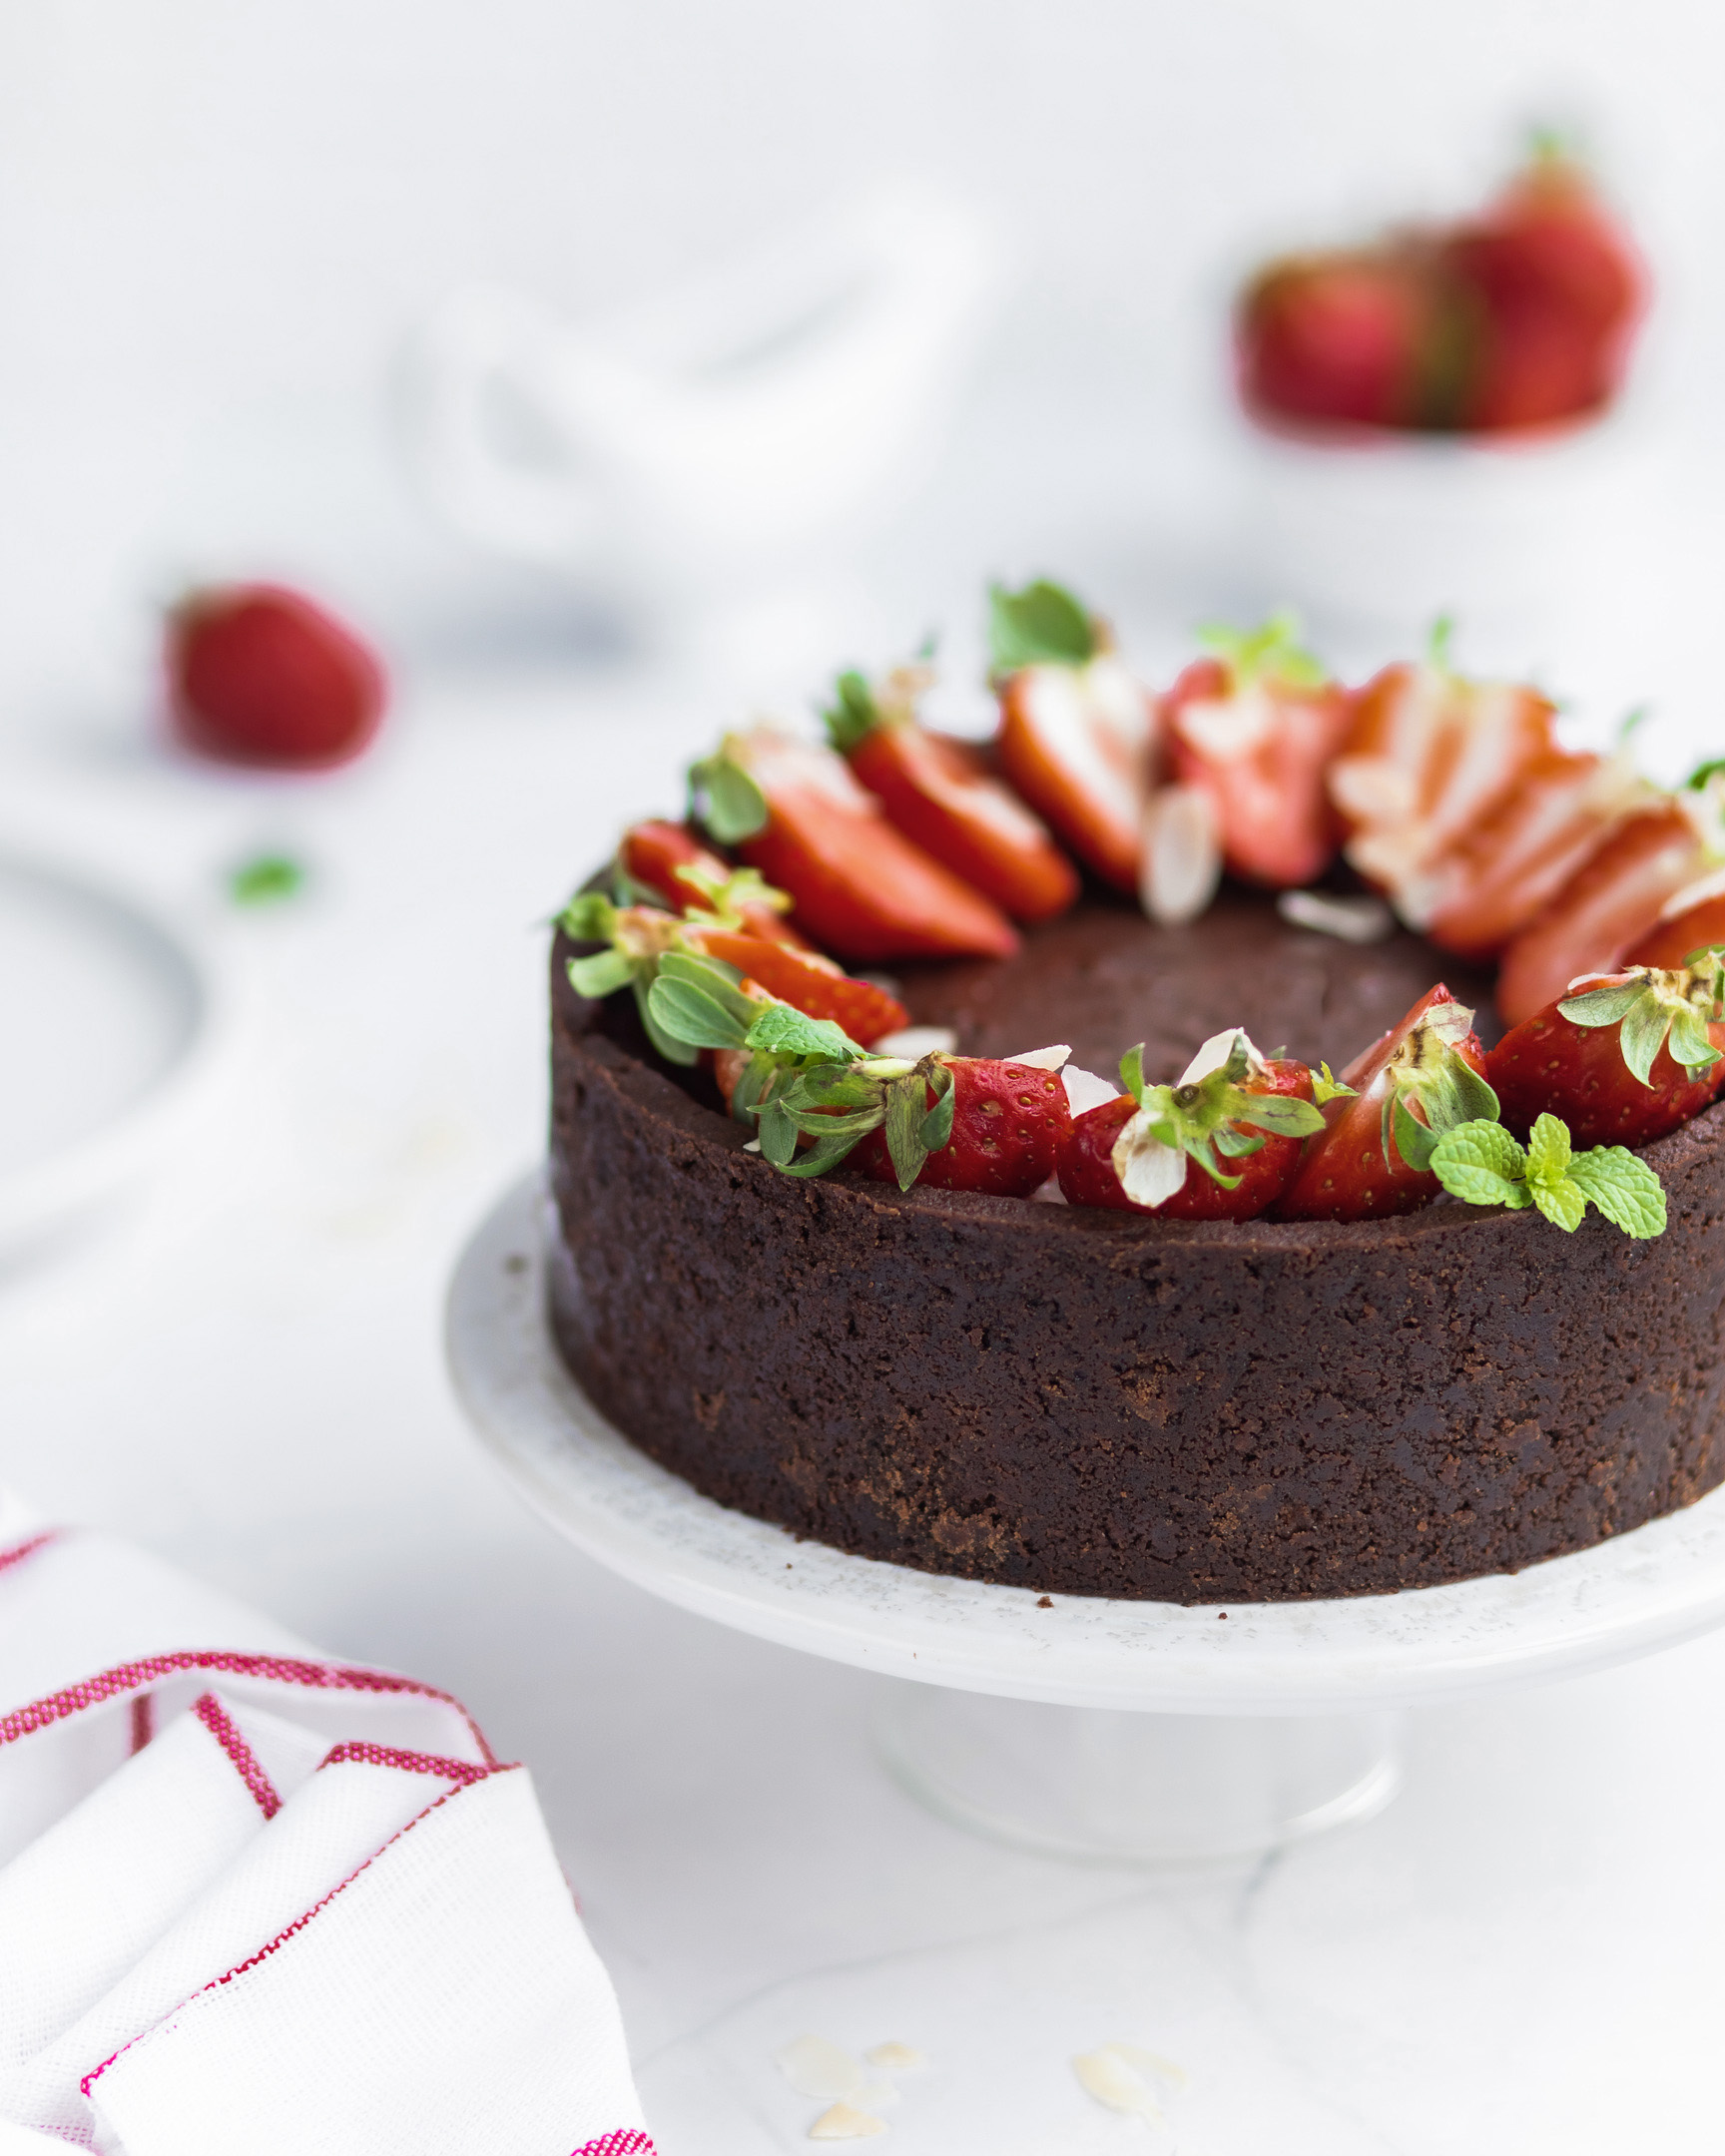 Кръгла торта с ягоди. Кръгла торта, покрита с ягоди и мента, е в средата на снимката.